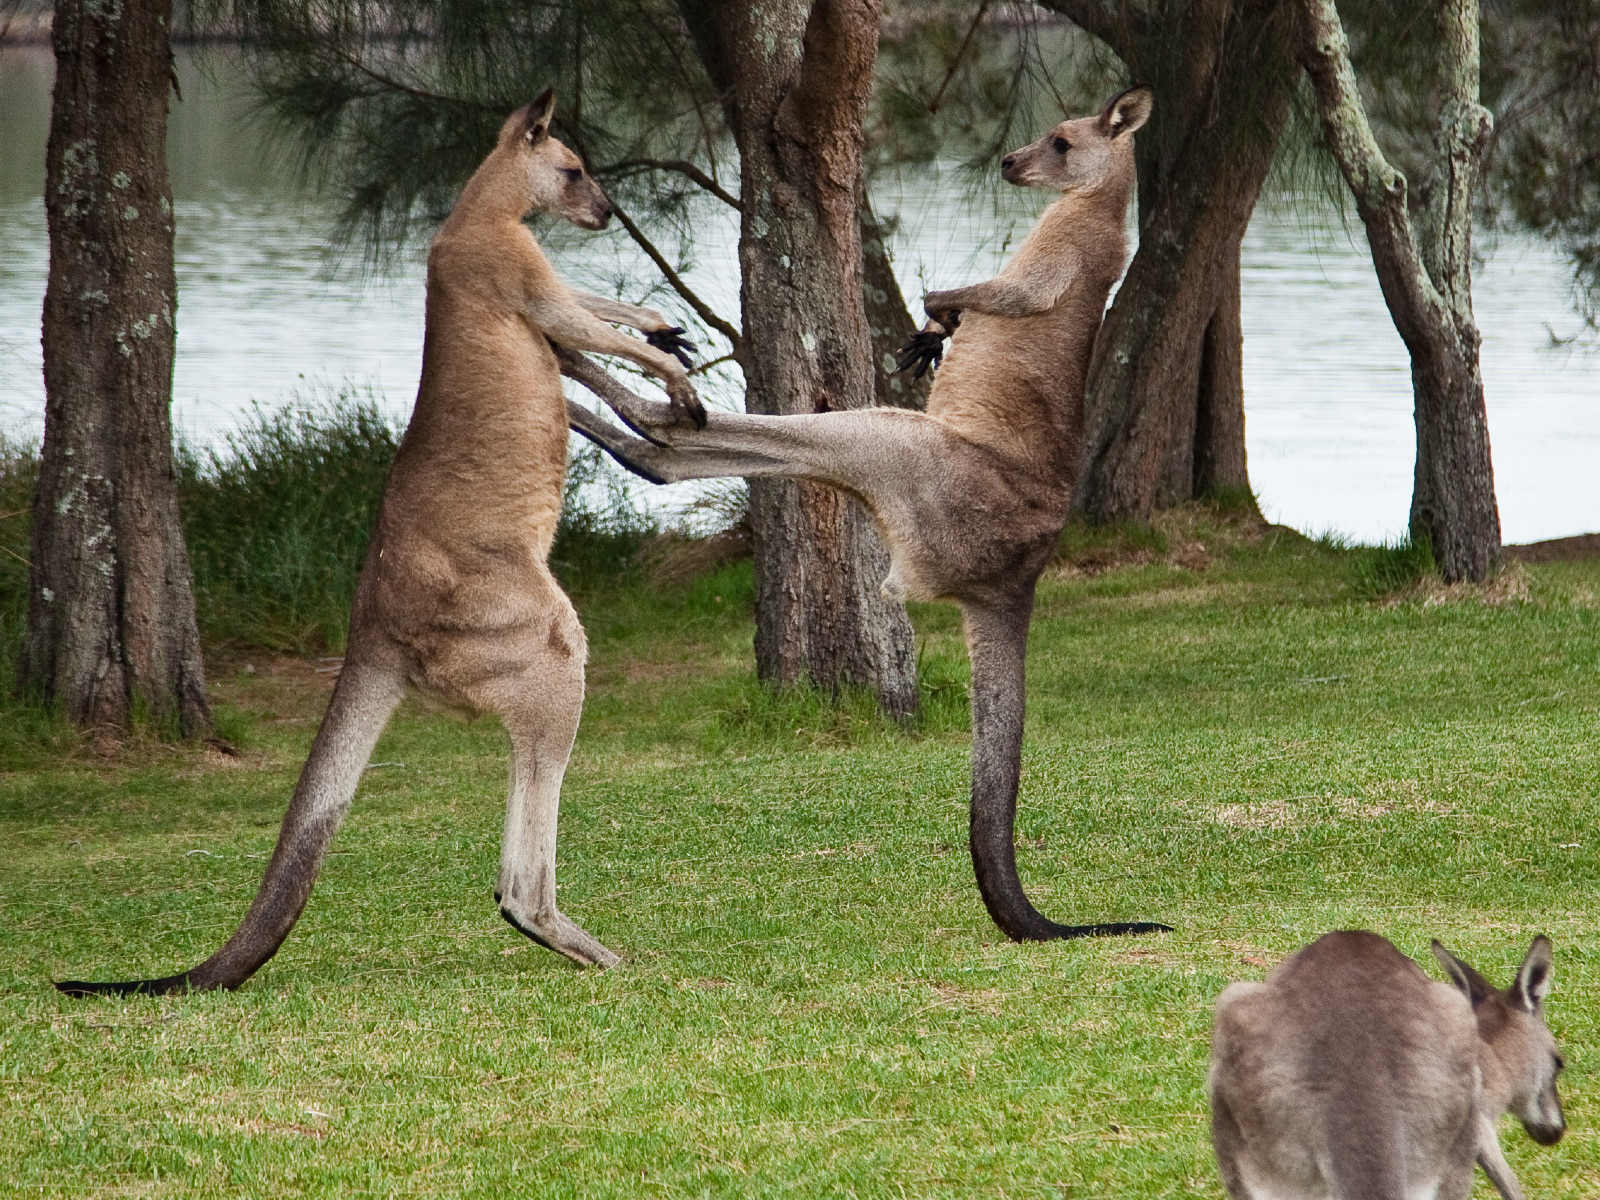 Con người sẽ sớm được cấy 'gân' của kangaroo để phục hồi những chần thương vùng đầu gối - Ảnh 2.